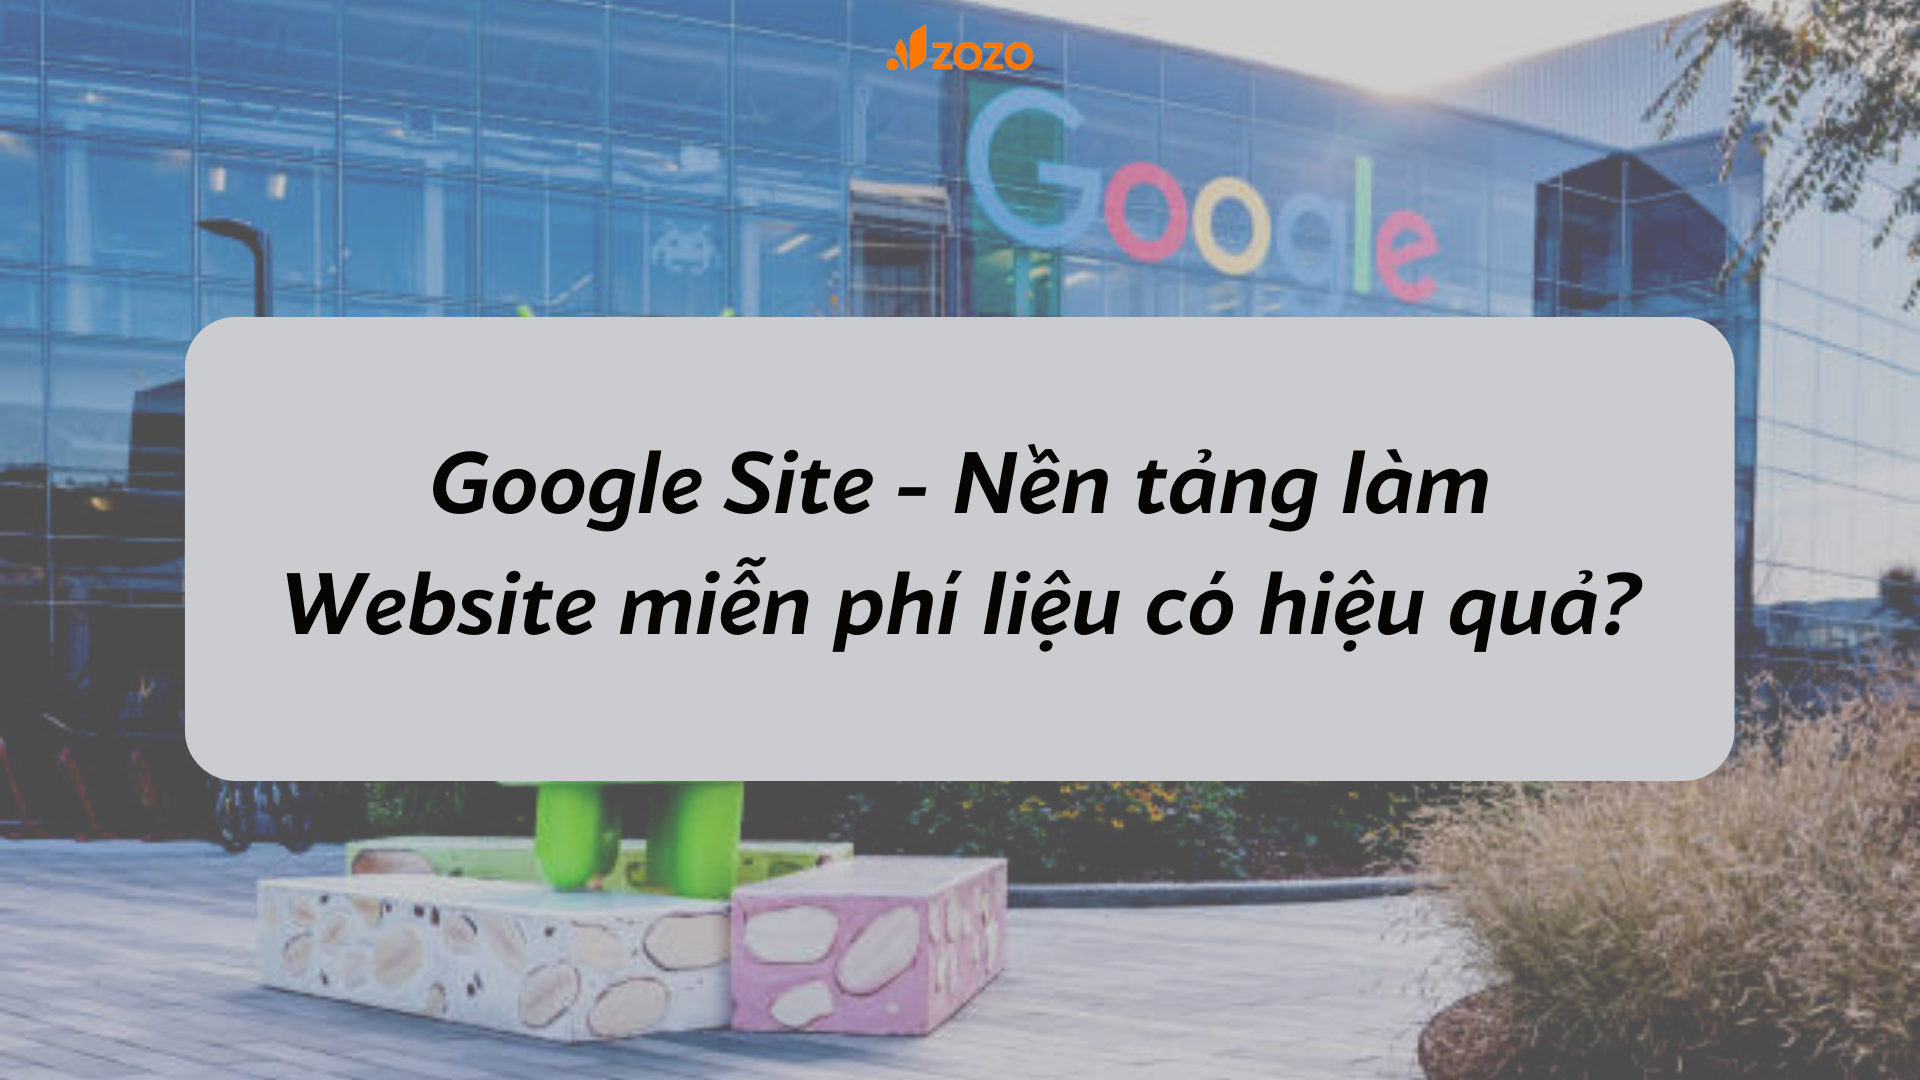 Google Site - Nền tảng làm Website miễn phí liệu có hiệu quả?